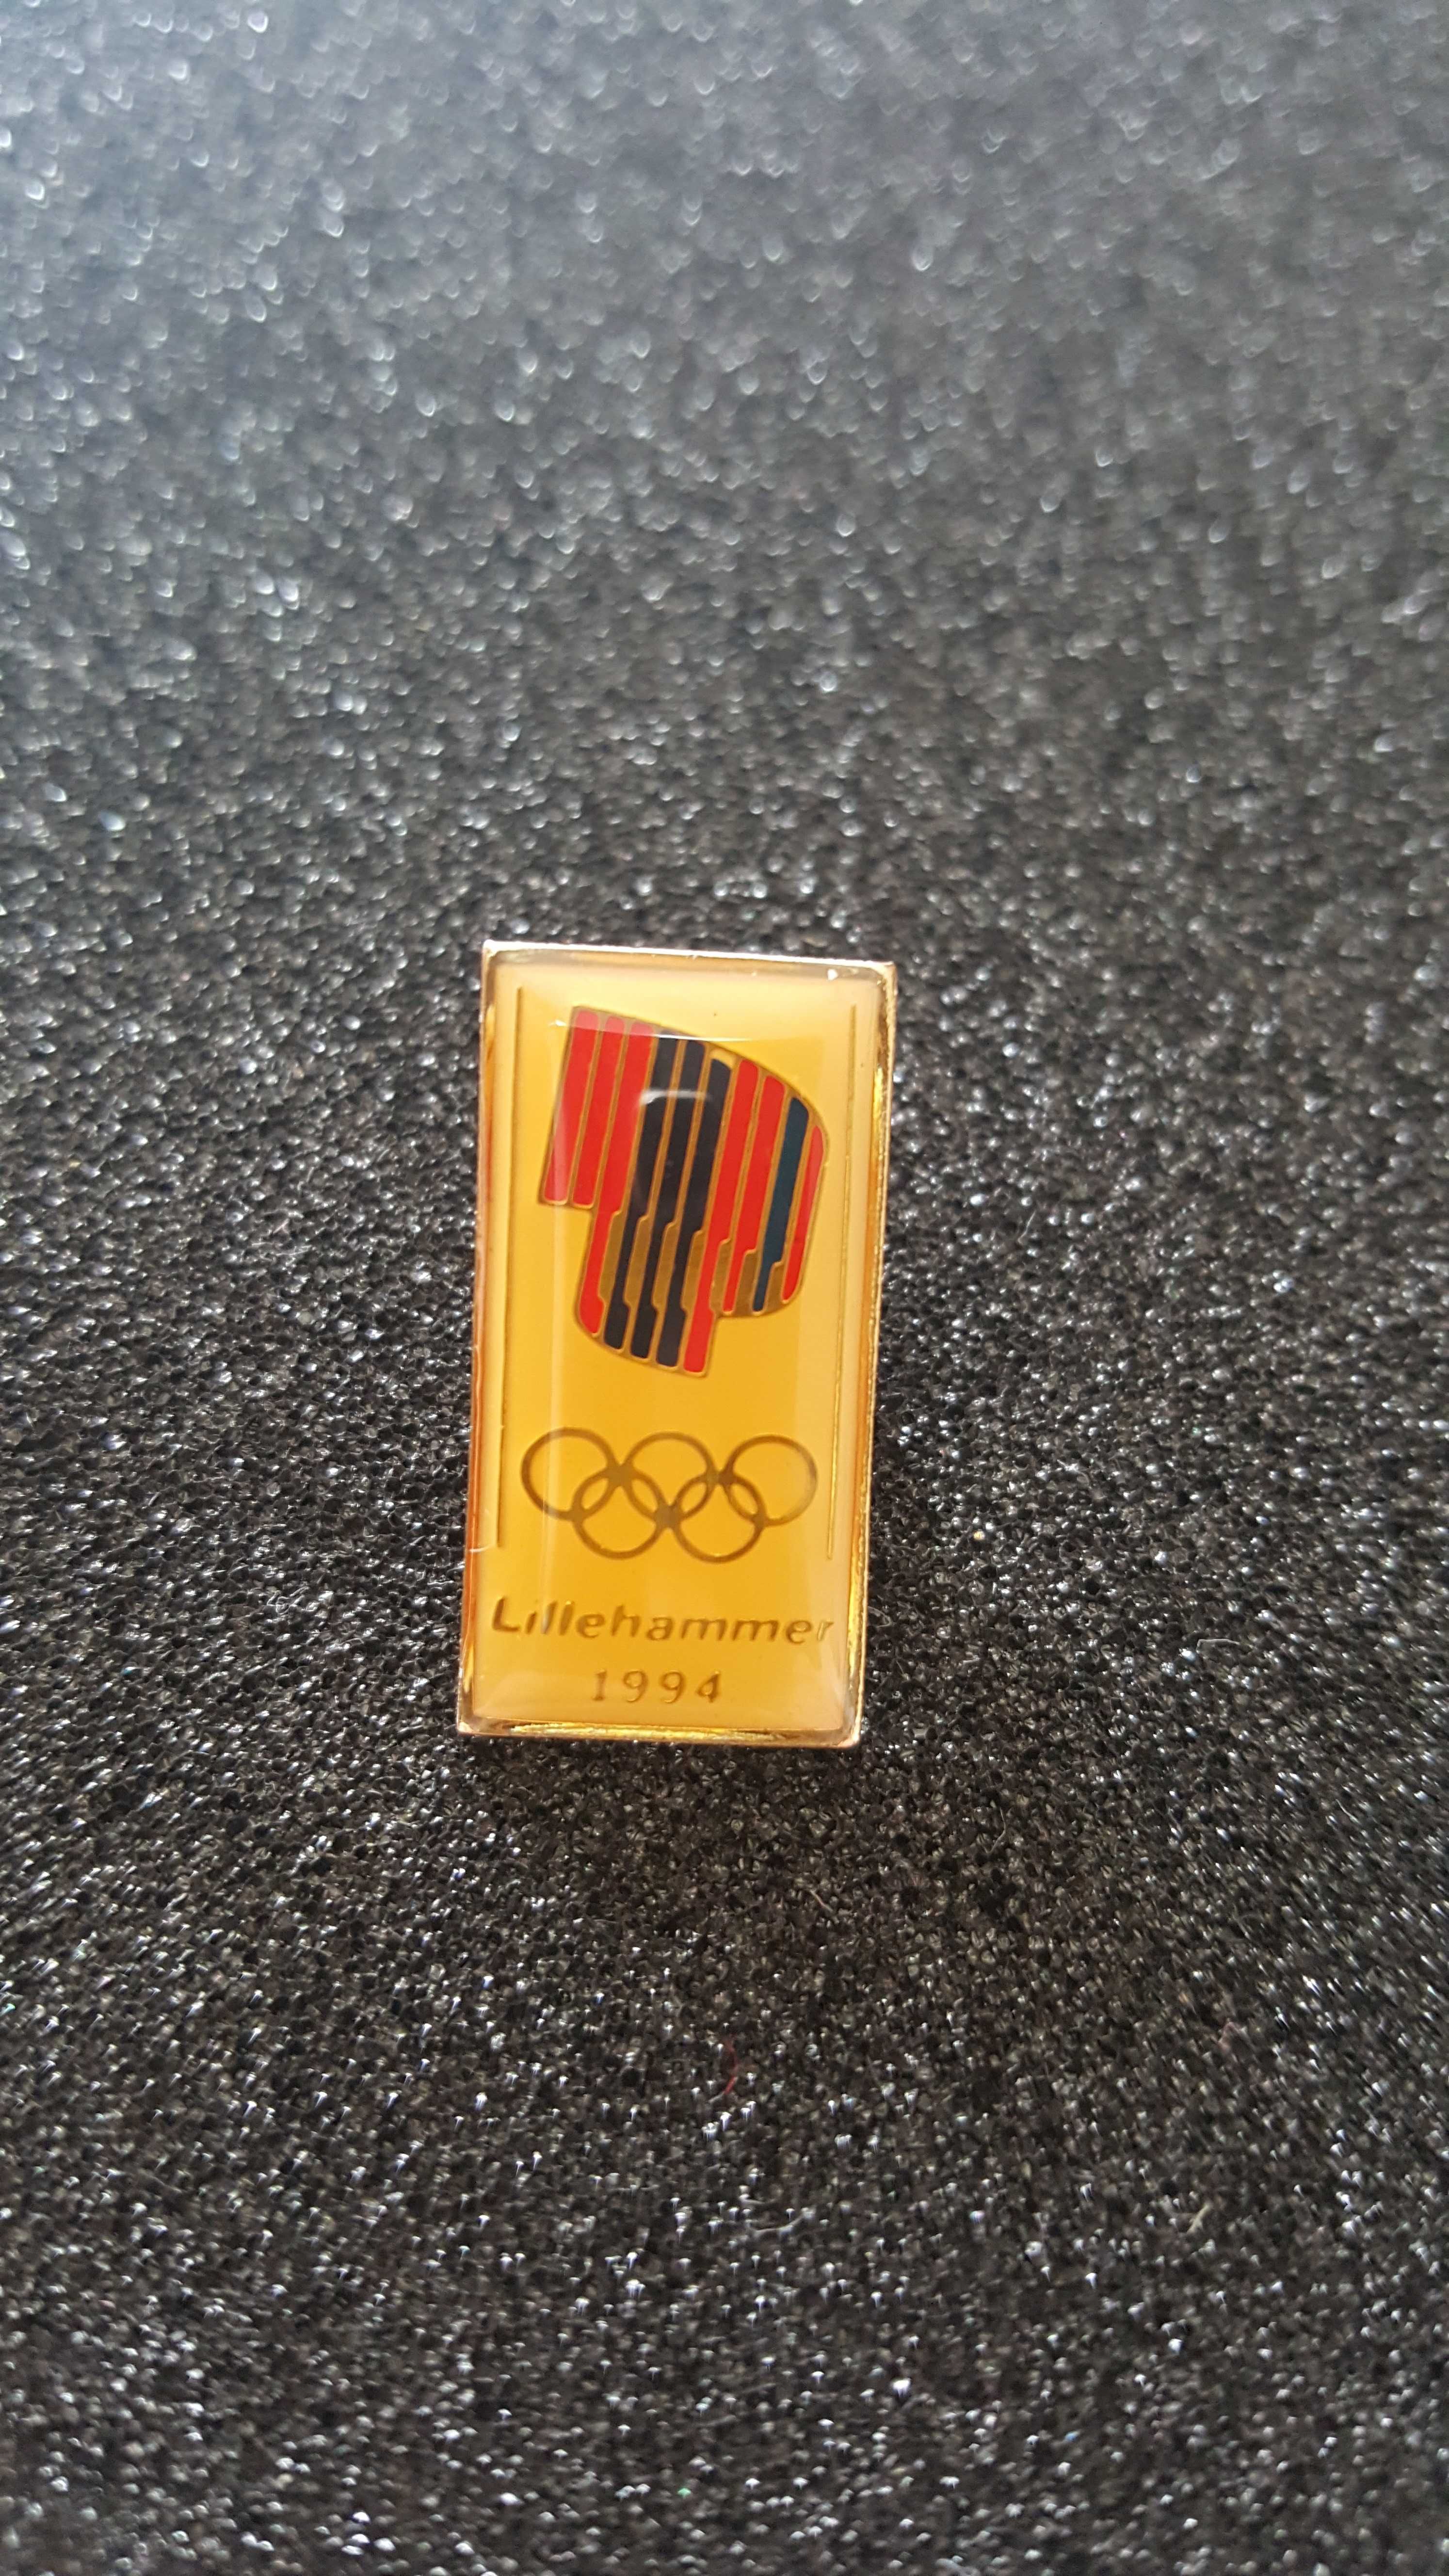 Оригинална олимпийска значка Lillehammer 1994